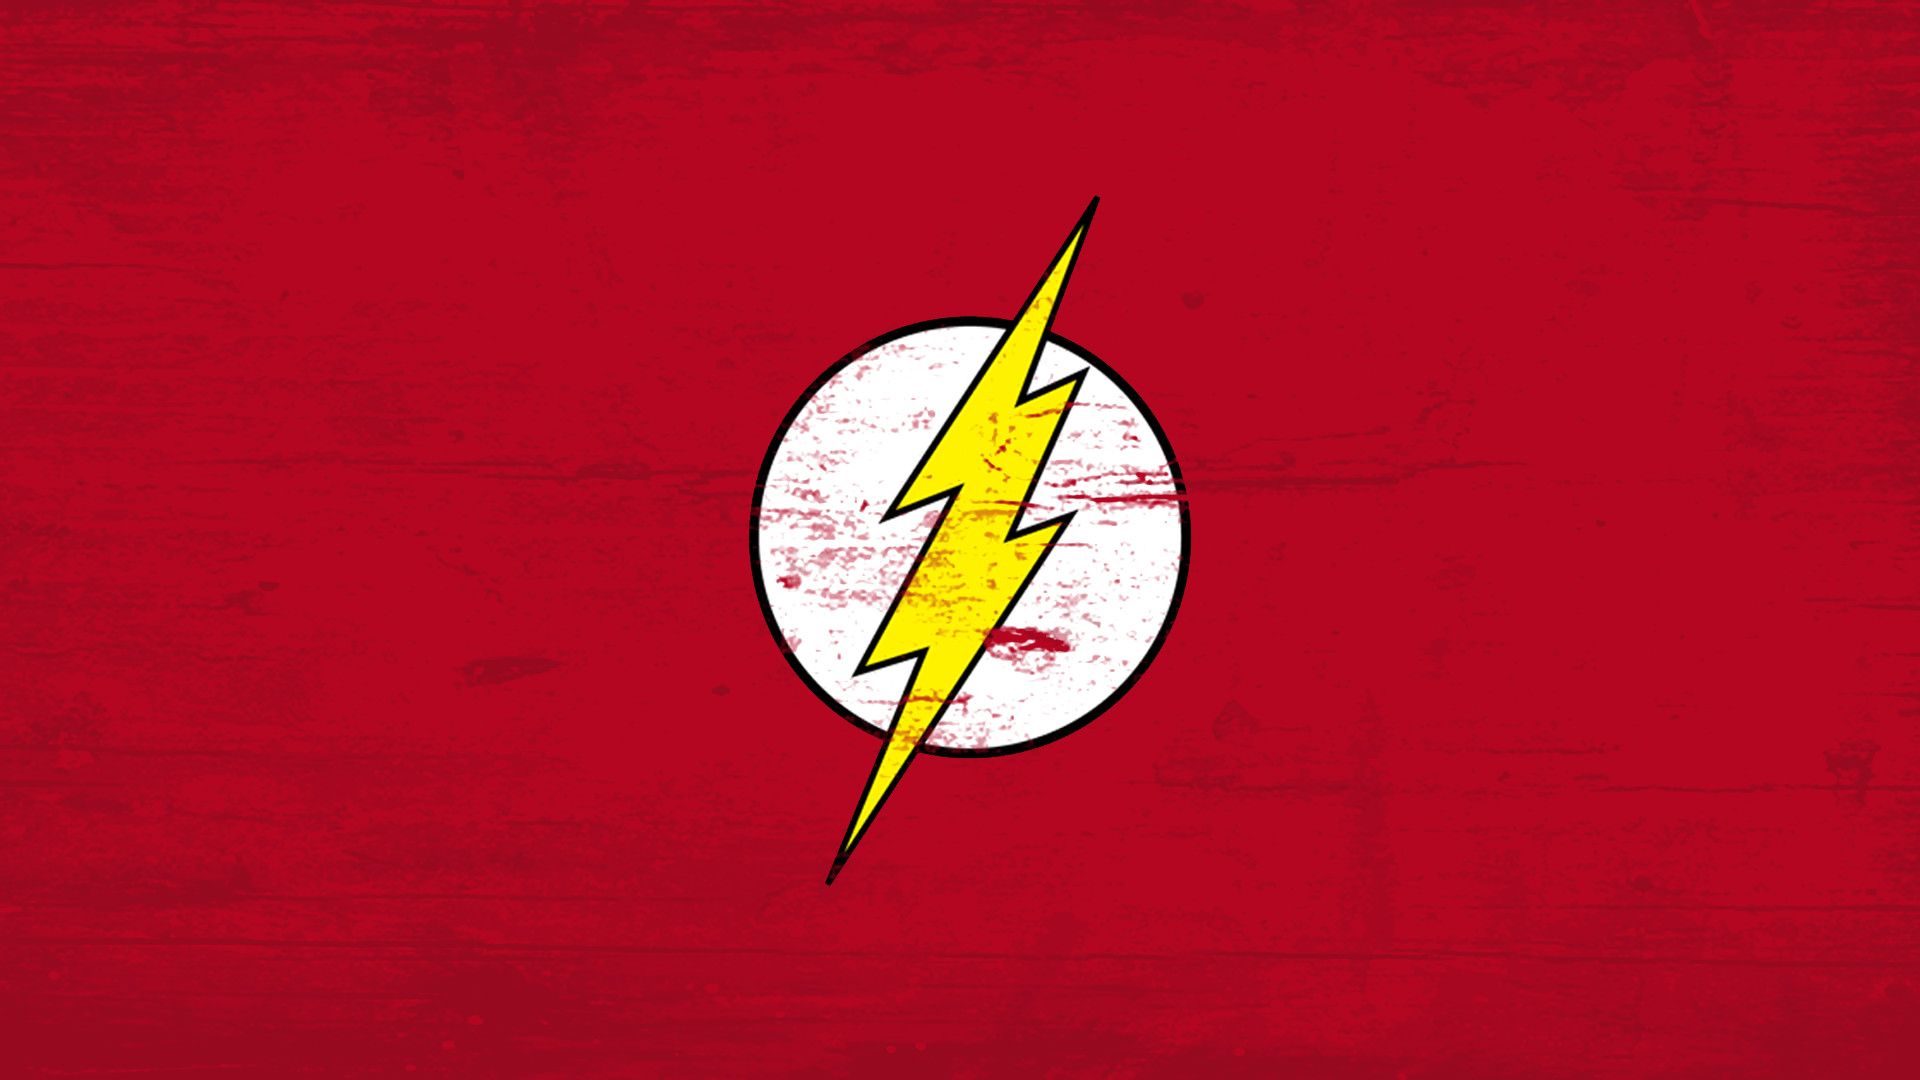 Wallpaper - Kid Flash 'Young Justice' Logo by Kalangozilla on DeviantArt